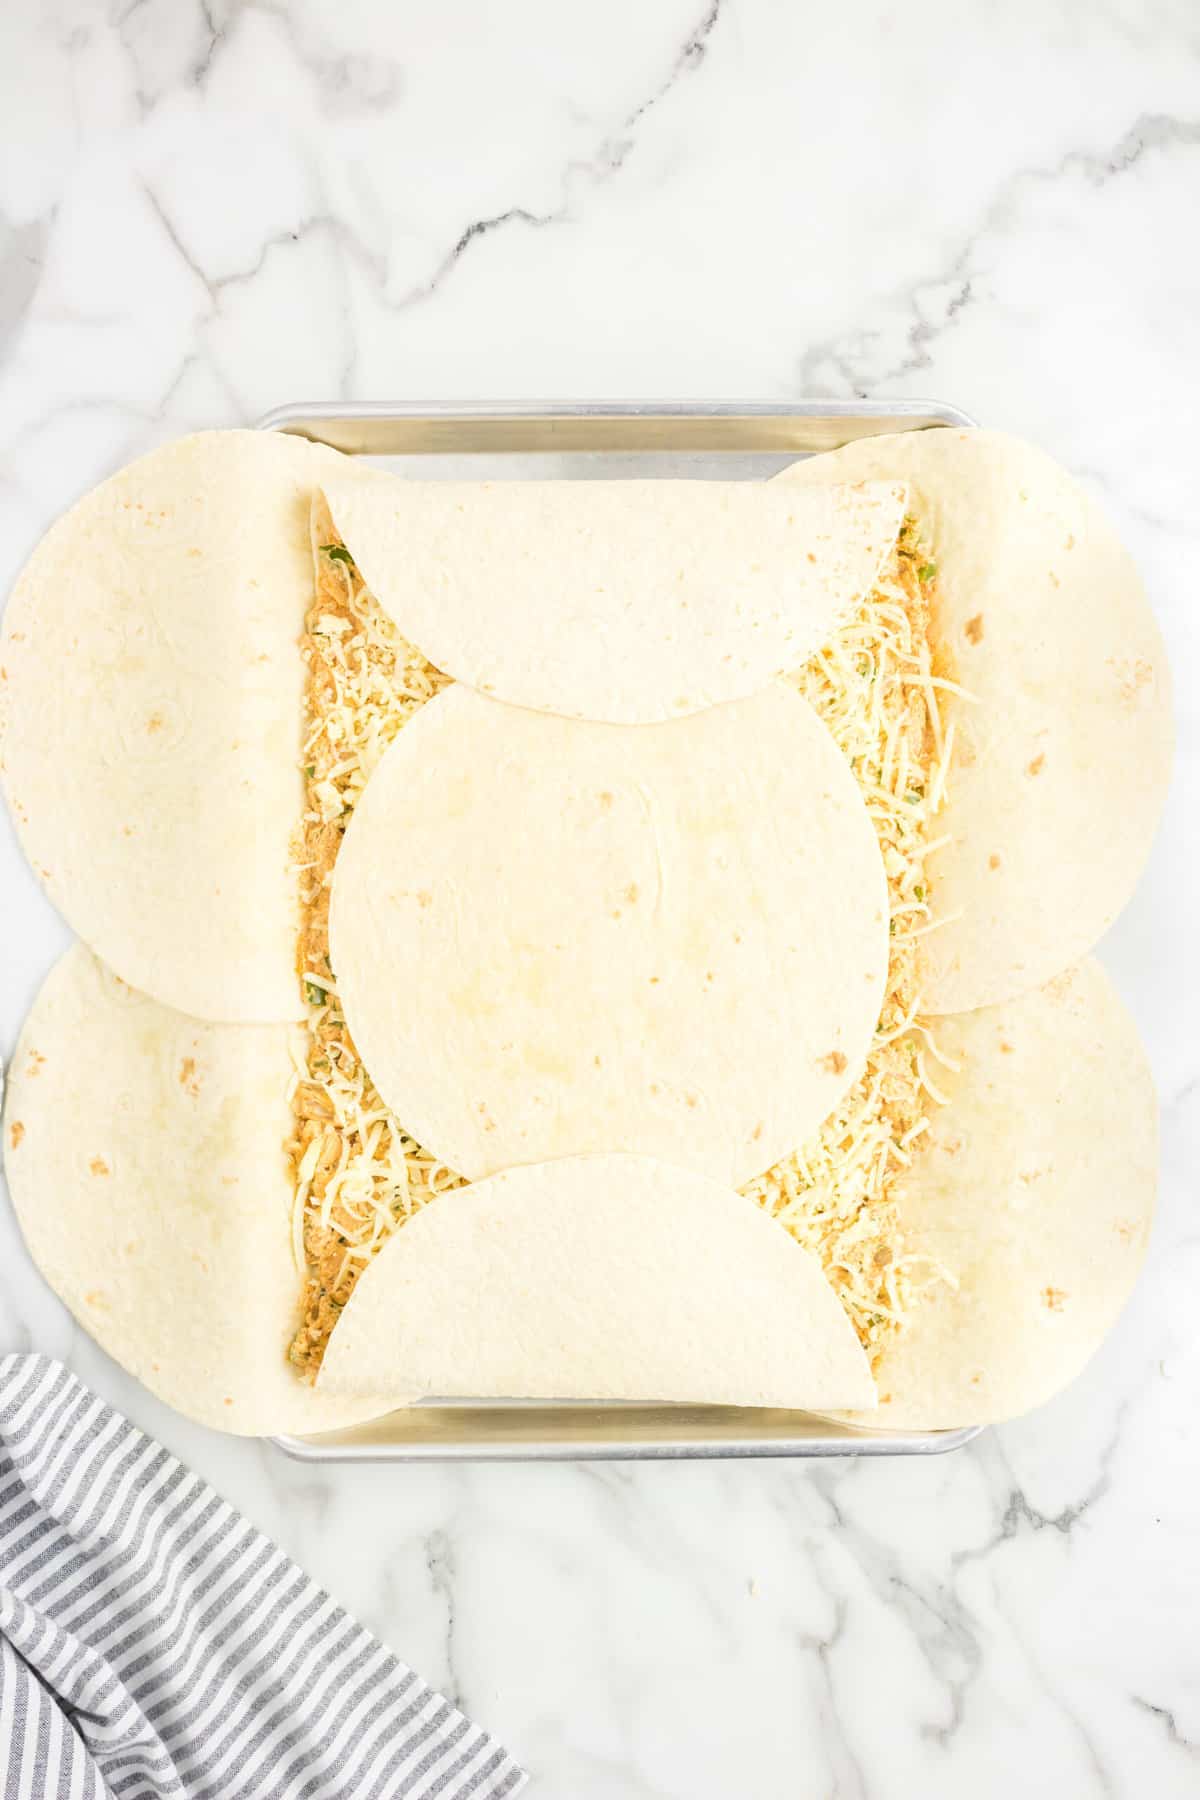 Folding Outer Tortillas Over for Sheet Pan Quesadillas Recipe